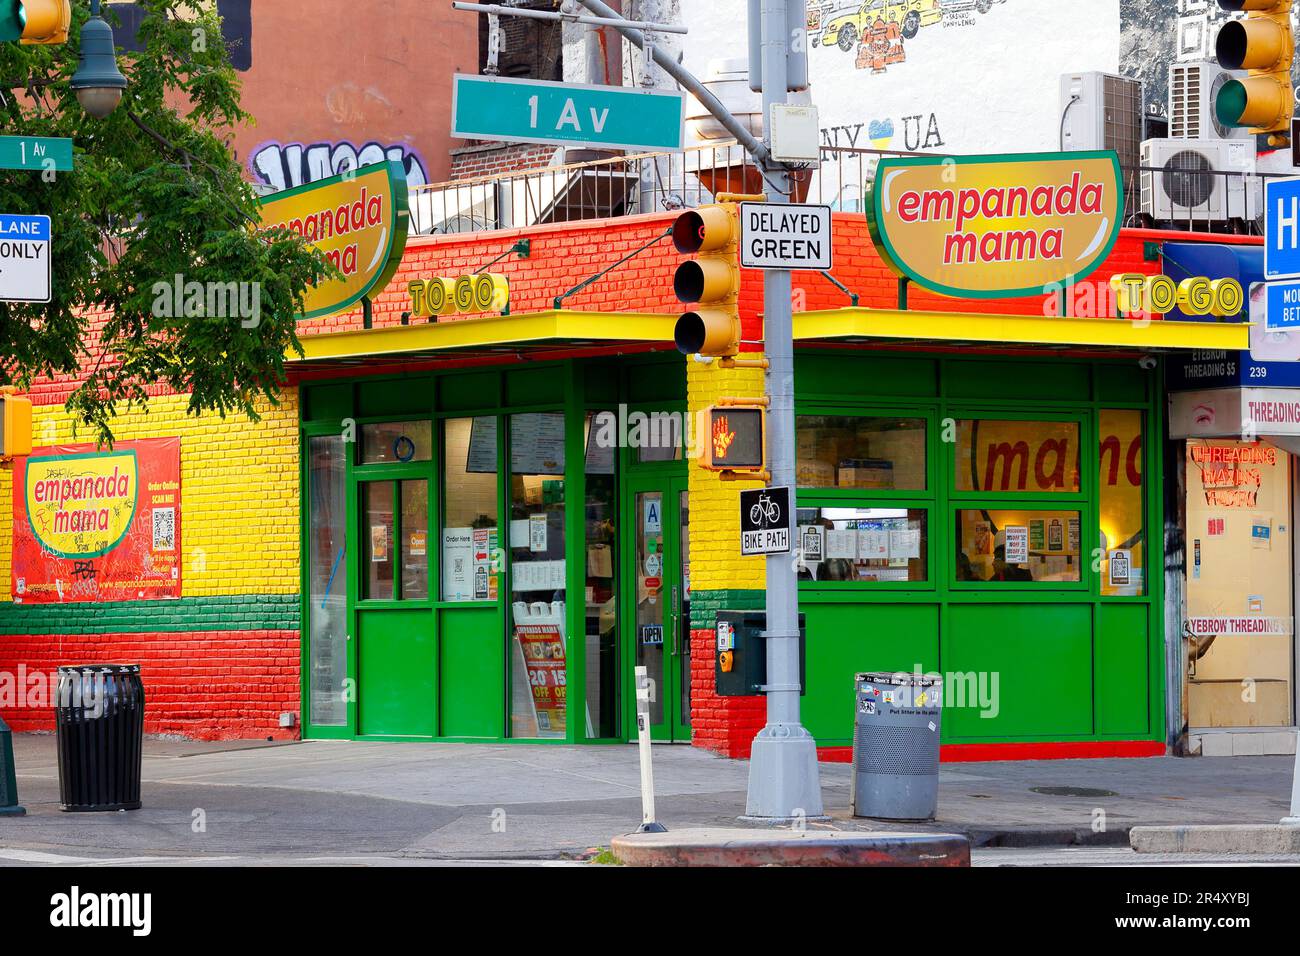 Empanada Mama, 239 1. Ave., New York, New York, New York, New York, Foto eines lateinamerikanischen Pastetenladens in Manhattans East Village Viertel. Stockfoto